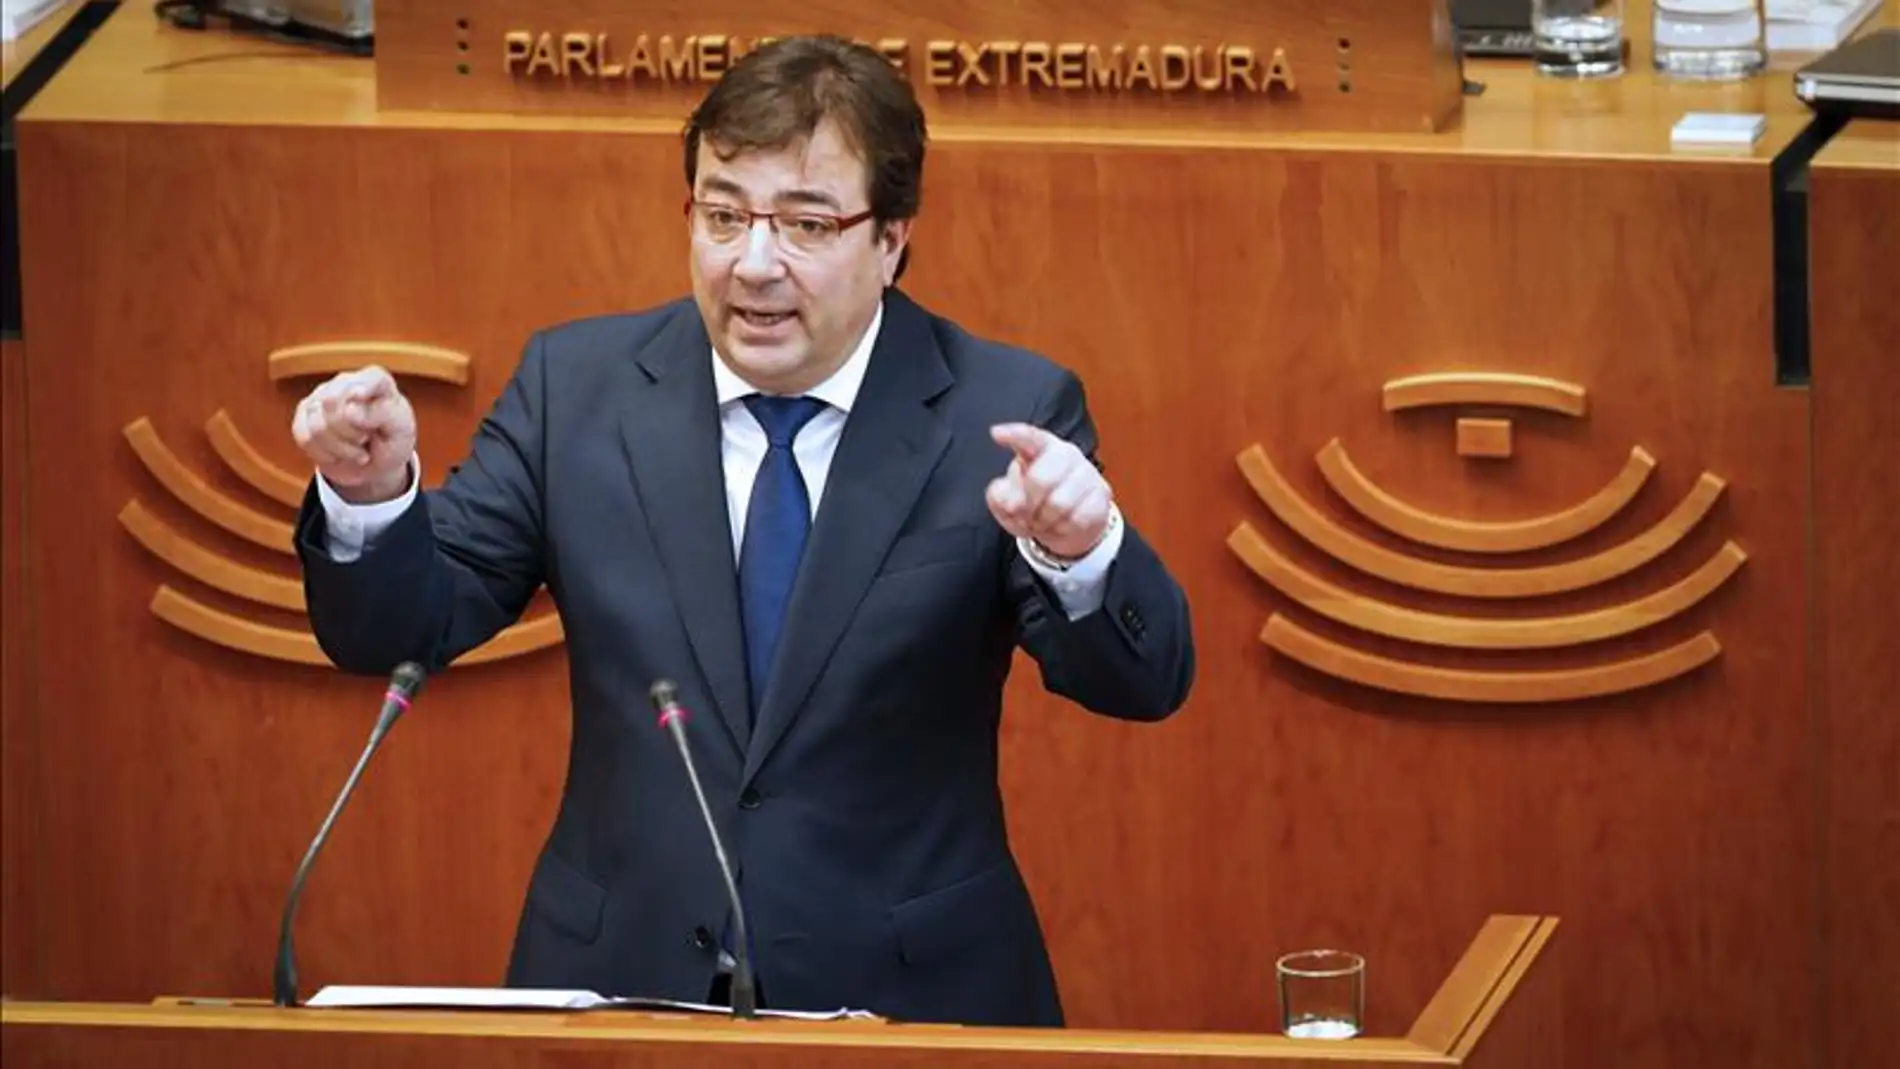 Fernández Vara en el parlamento de Extremadura